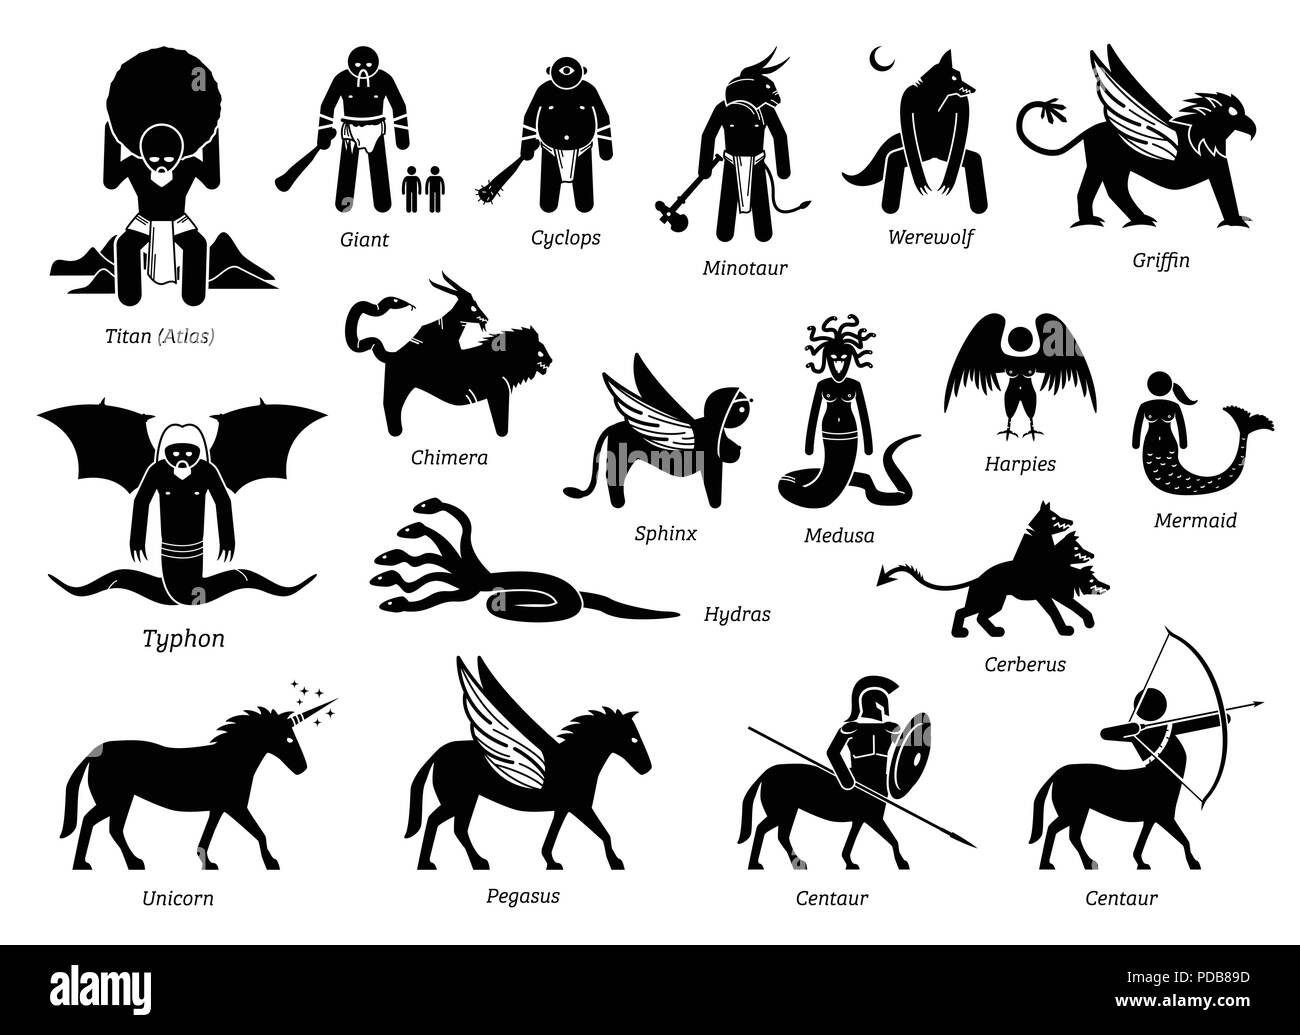 La antigua mitología griega Monstruos y criaturas caracteres conjunto de iconos Ilustración del Vector